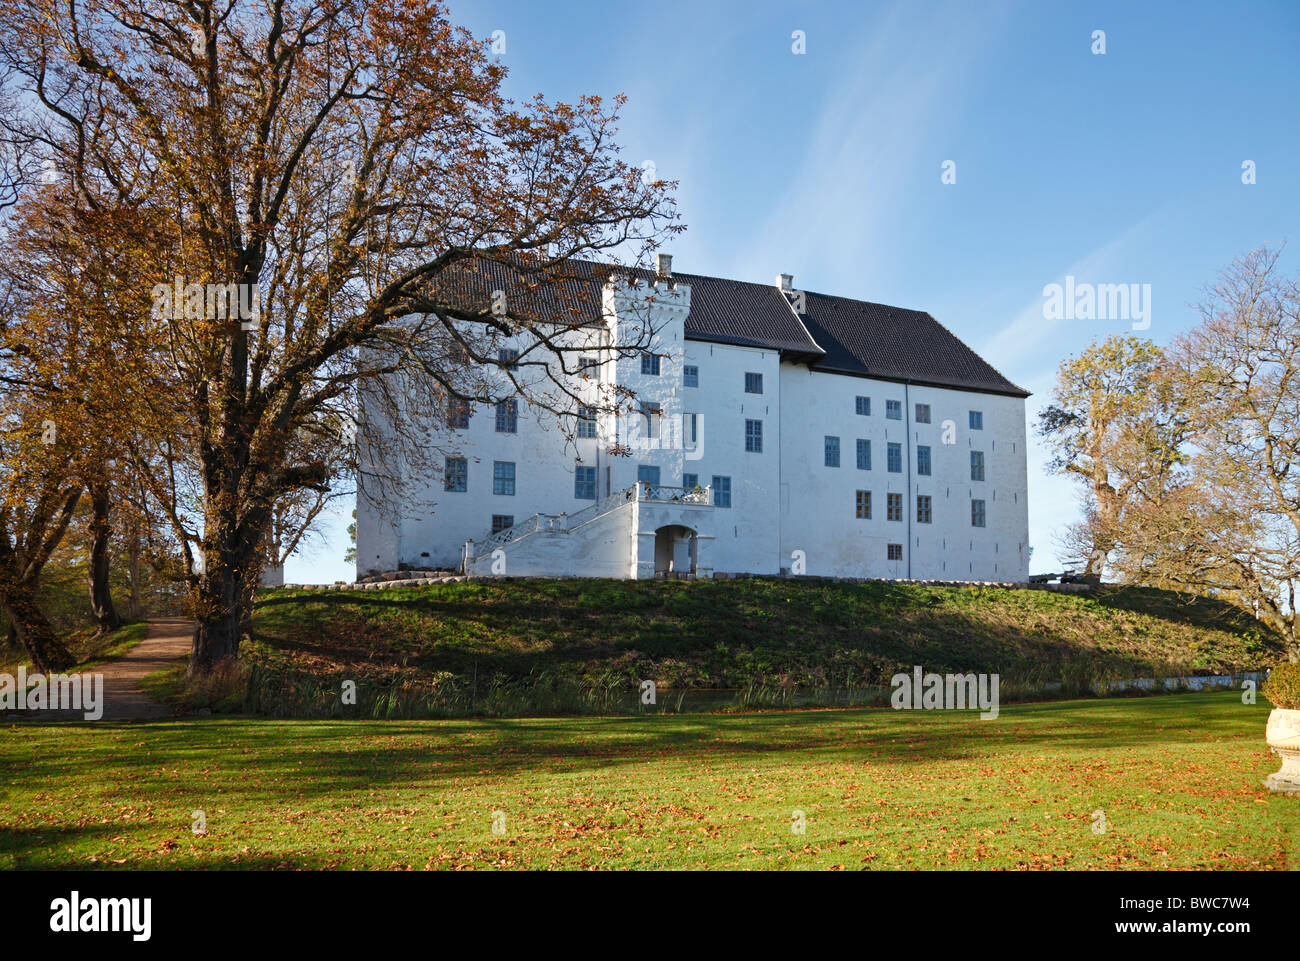 Das vermutlich im 12. Jahrhundert heimste Schloss Dragsholm in Hørve im Nordwesten von Seeland, Dänemark. Jetzt ein berühmtes Restaurant und Hotel. Stockfoto